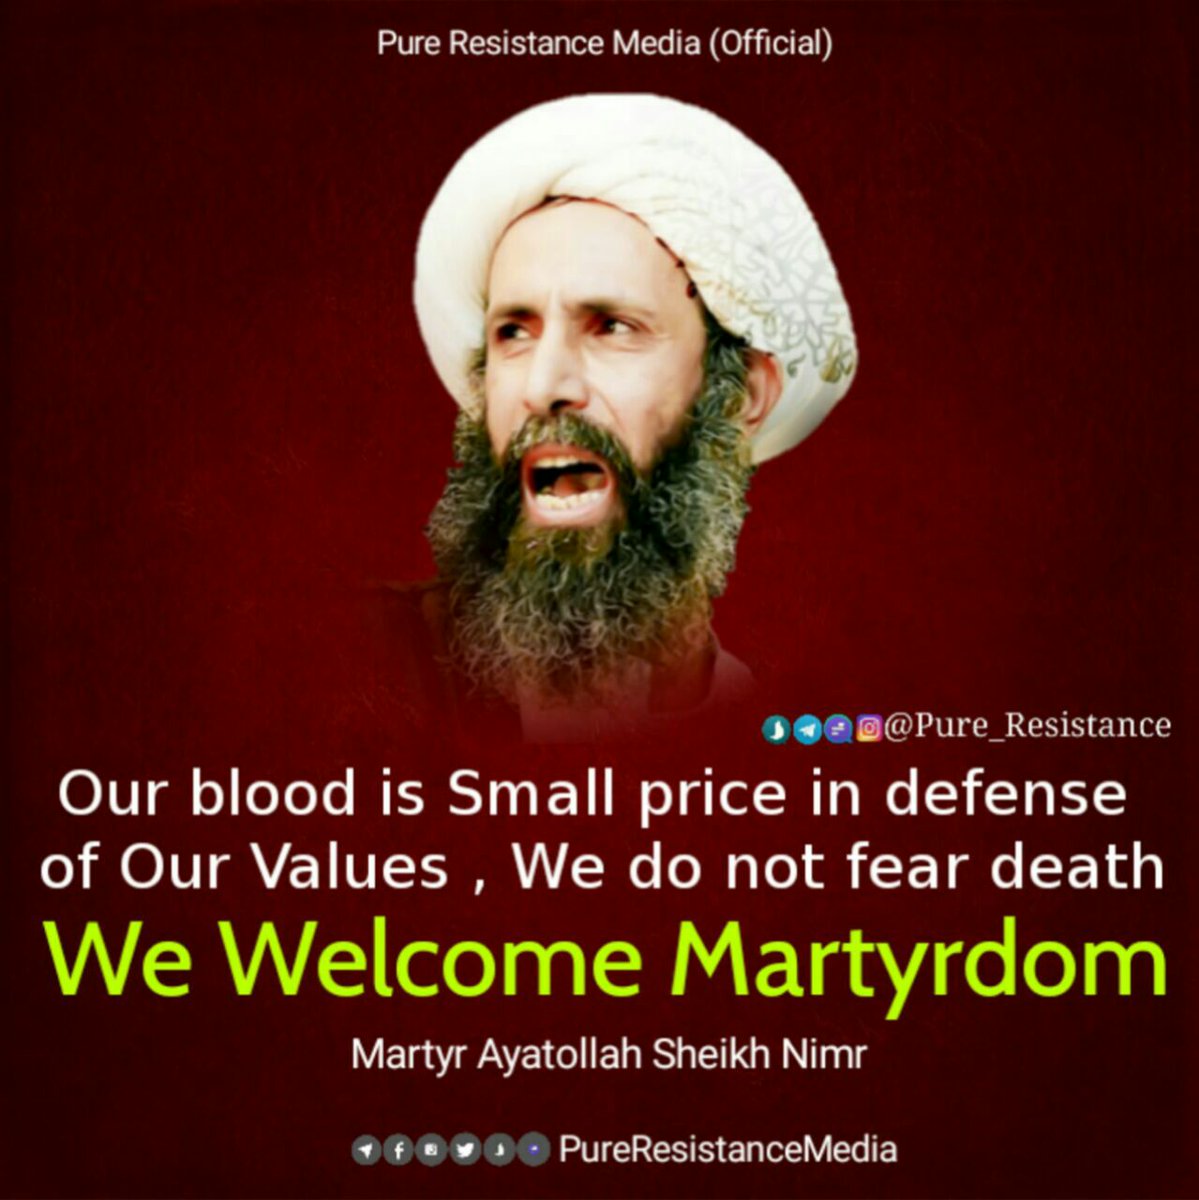 #SaudibeheadedNimr 
#SaudiCrimes #Saudiregime #NimirRisesMBSfalls #NimrRisesMBSfalls #Martyrdom